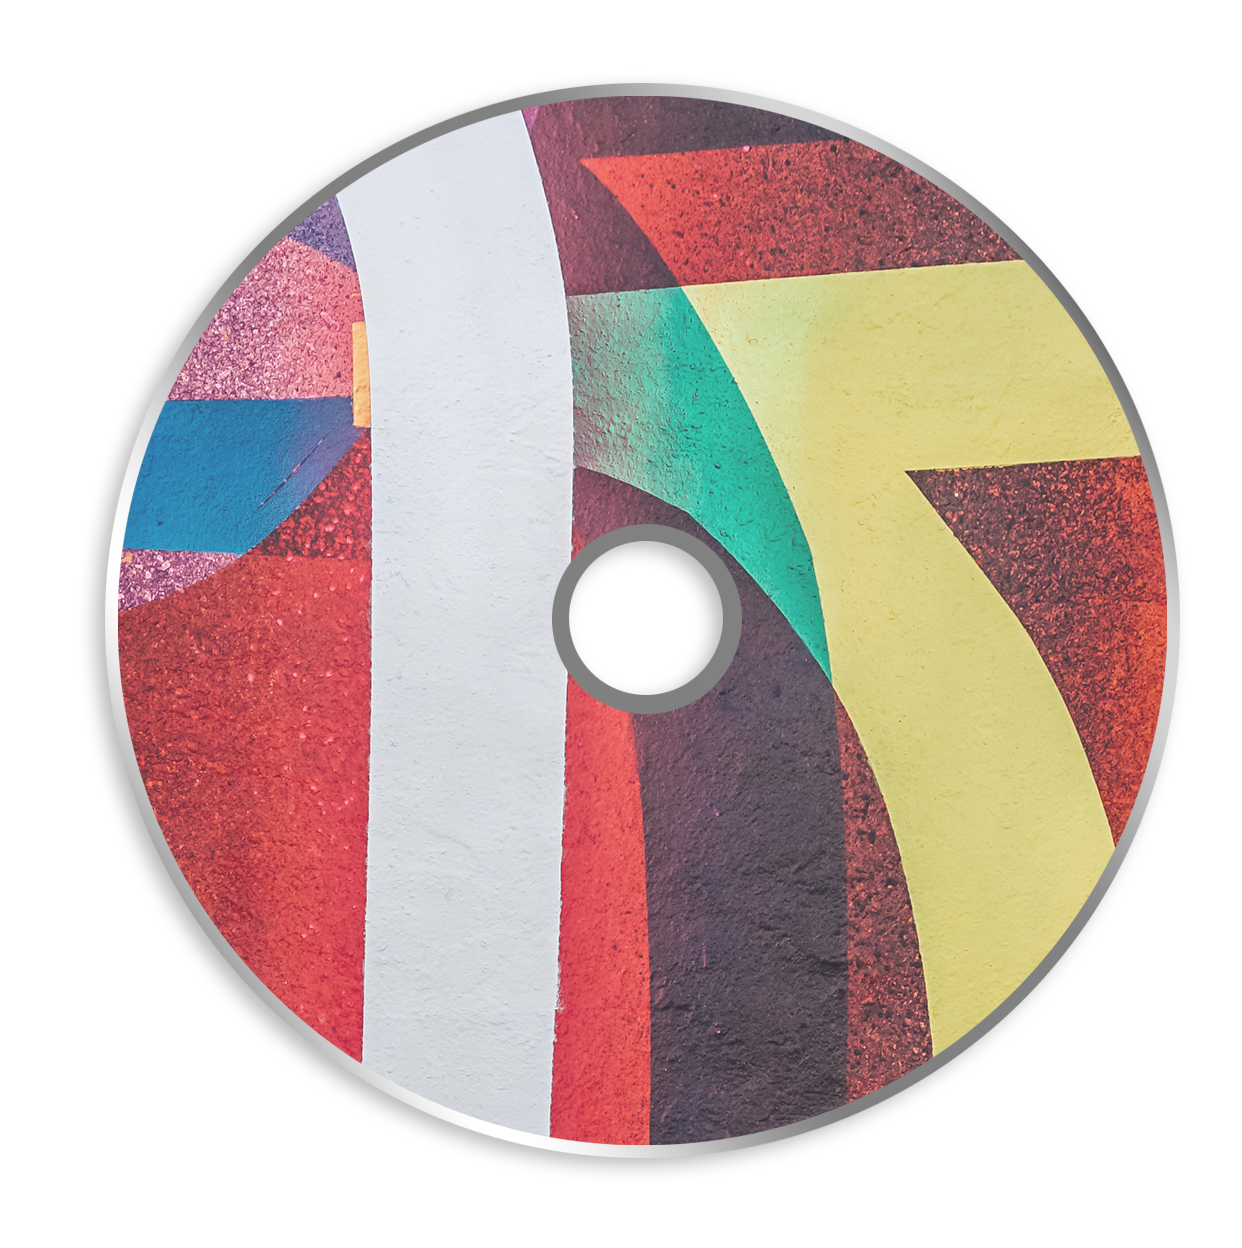 Boş CD baskısı Inkjet 4c + mühürleme resmi